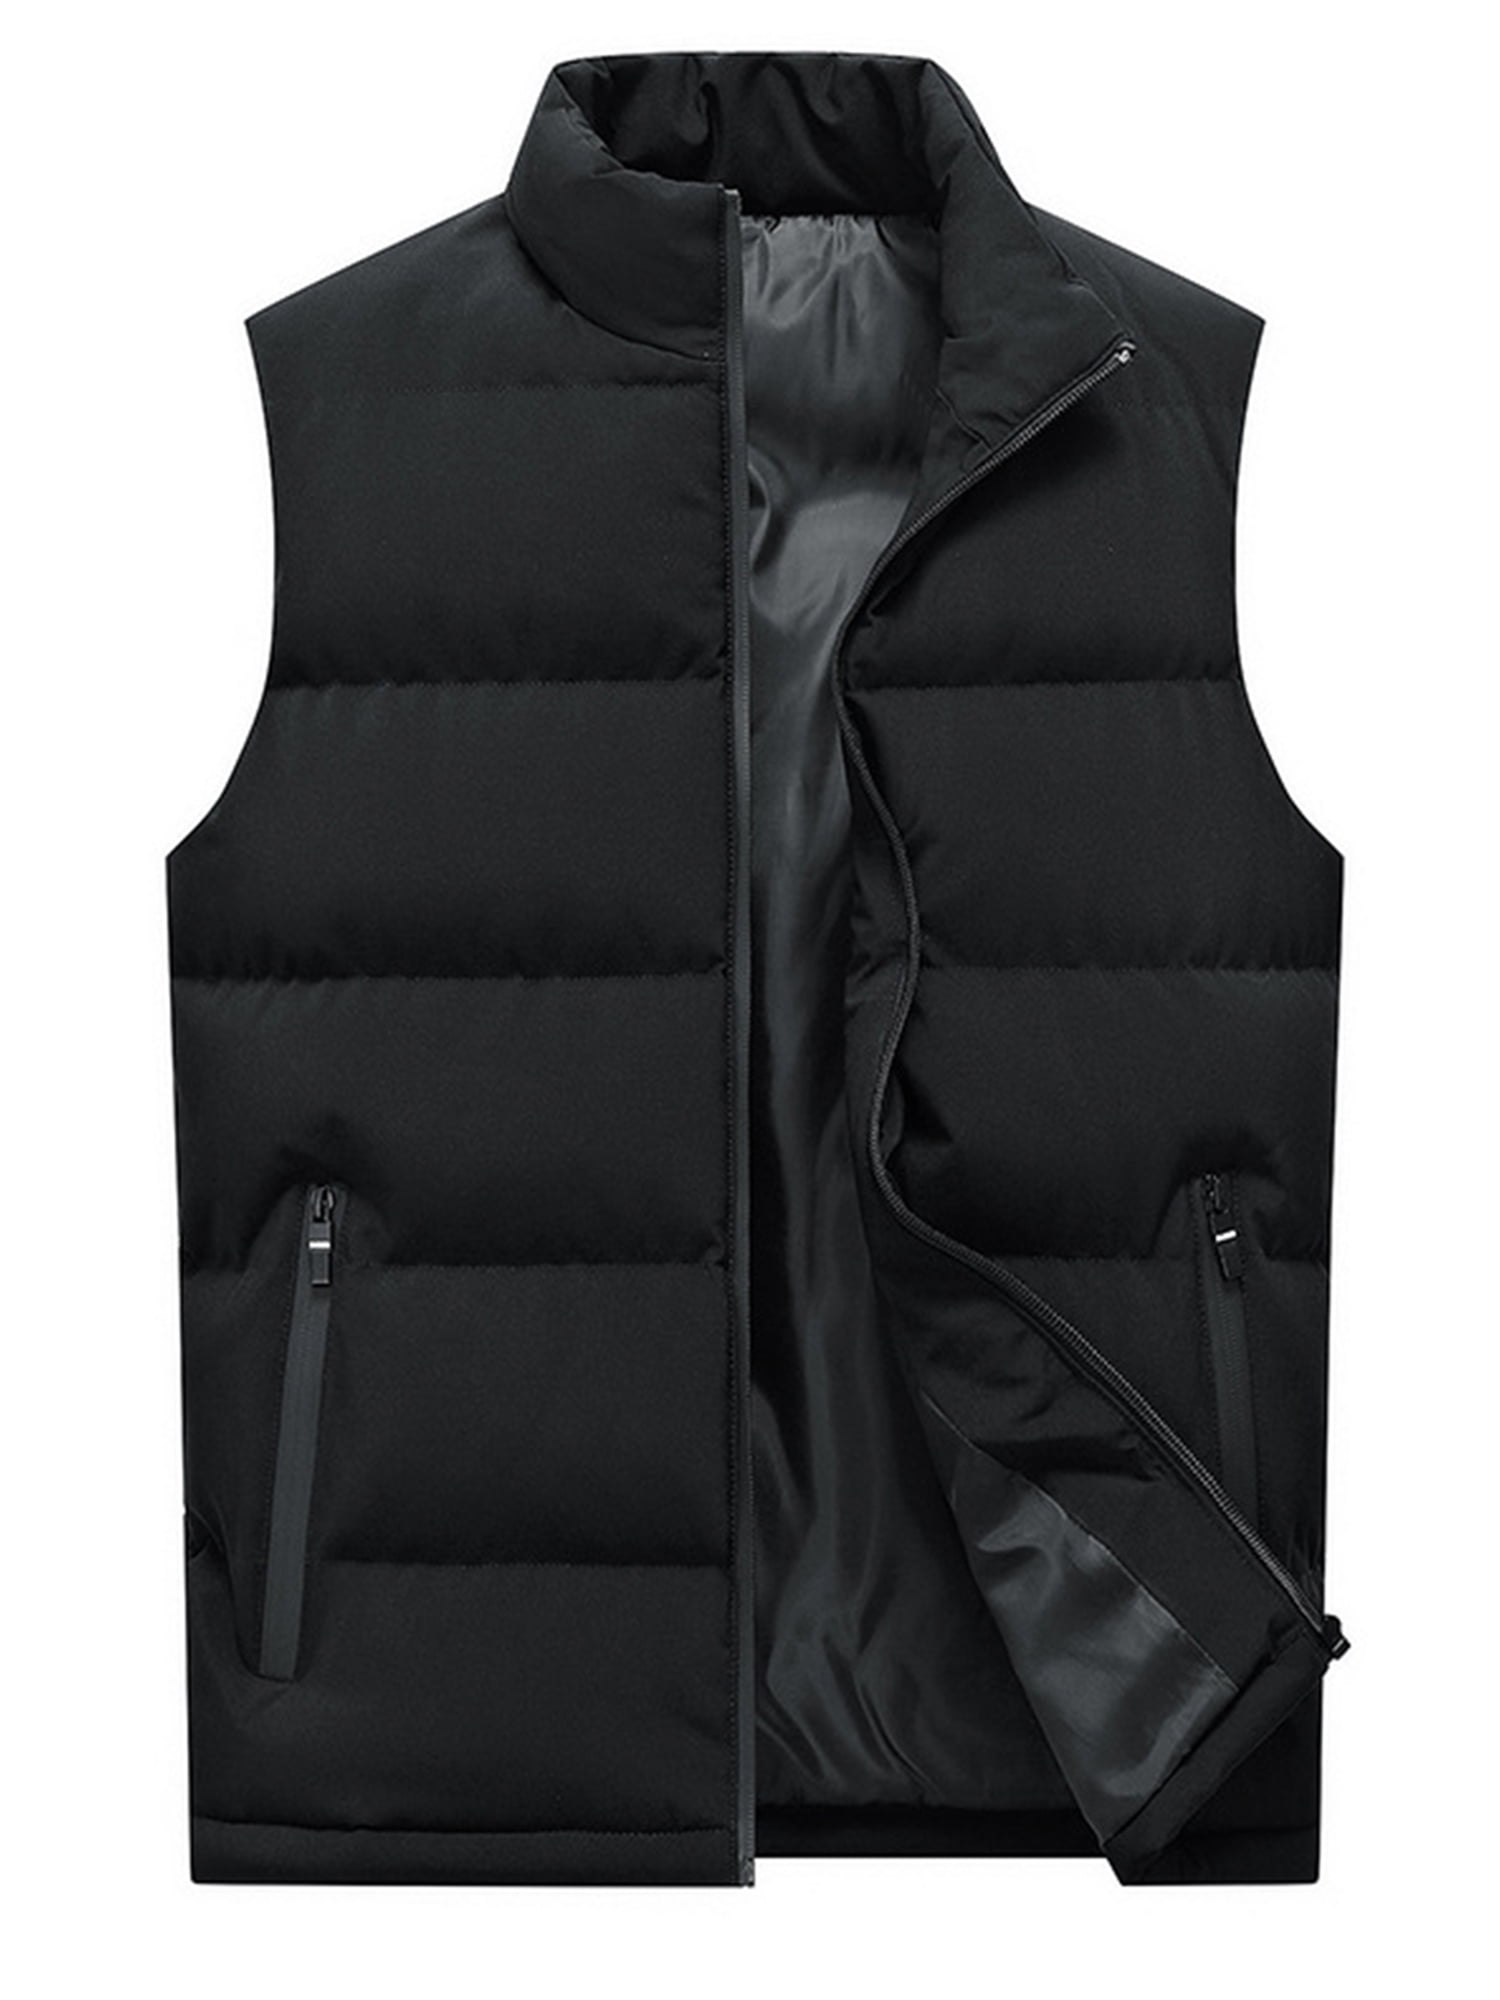 GXFC Women Winter Vest Coat Sleeveless Zipper Waistcoat Outwear Fall ...